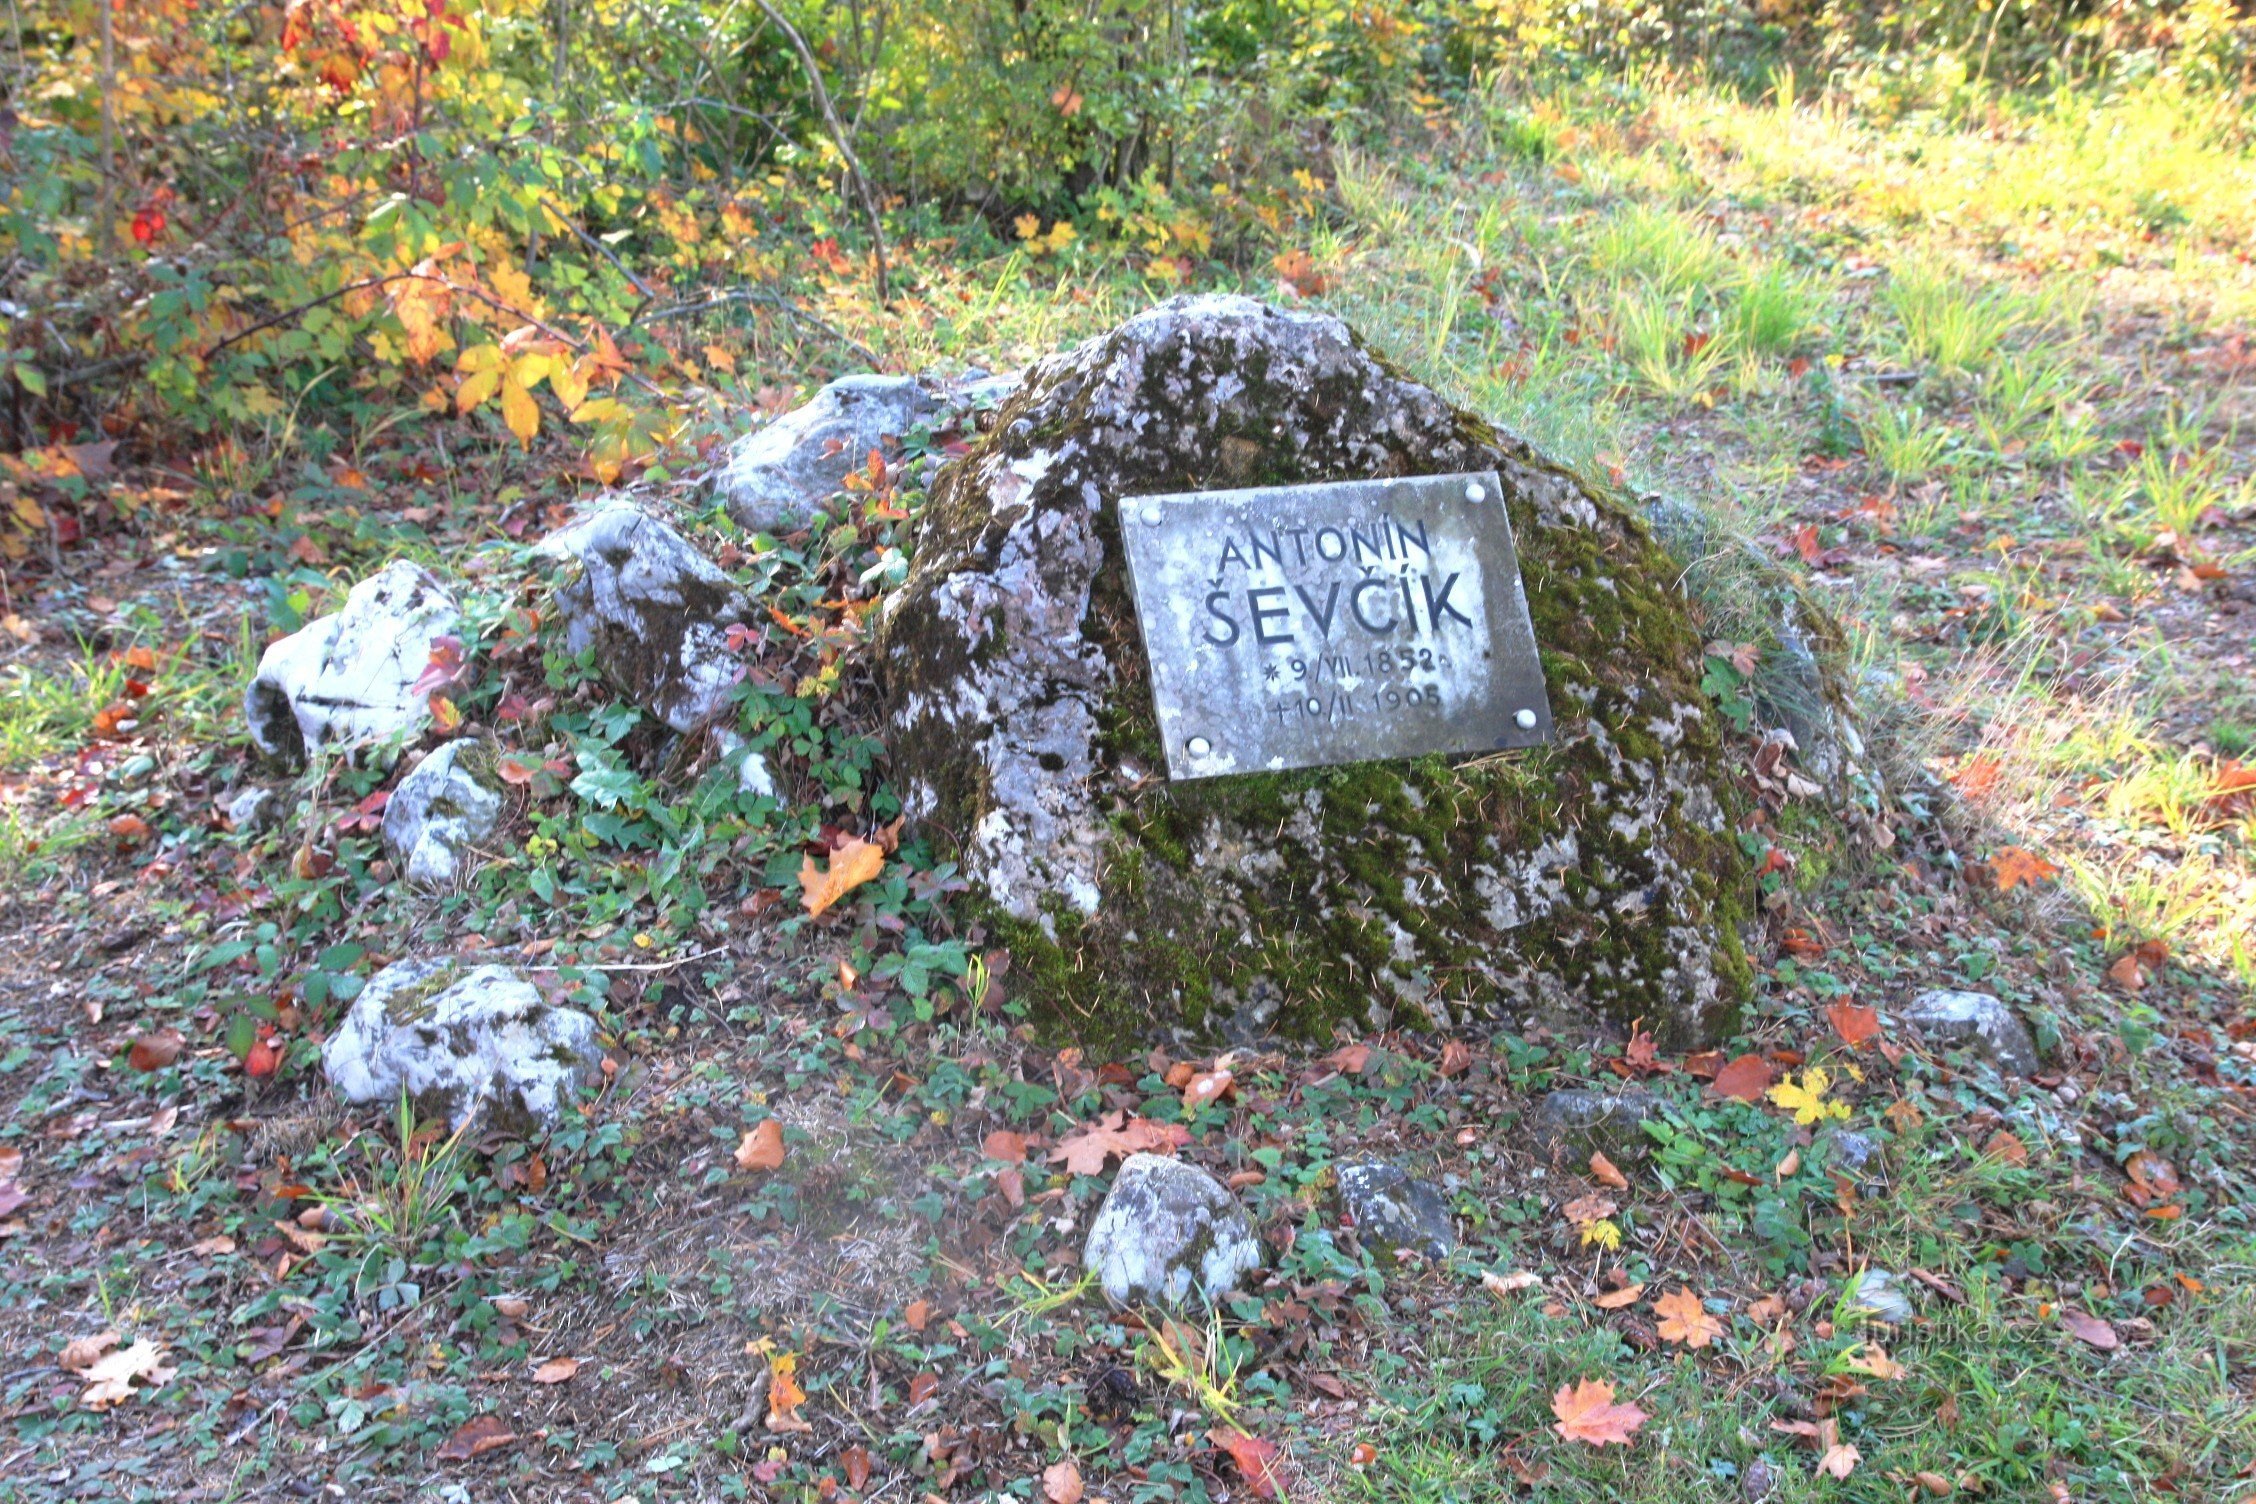 Schattin matka alkaa A. Ševčíkin muistomerkistä